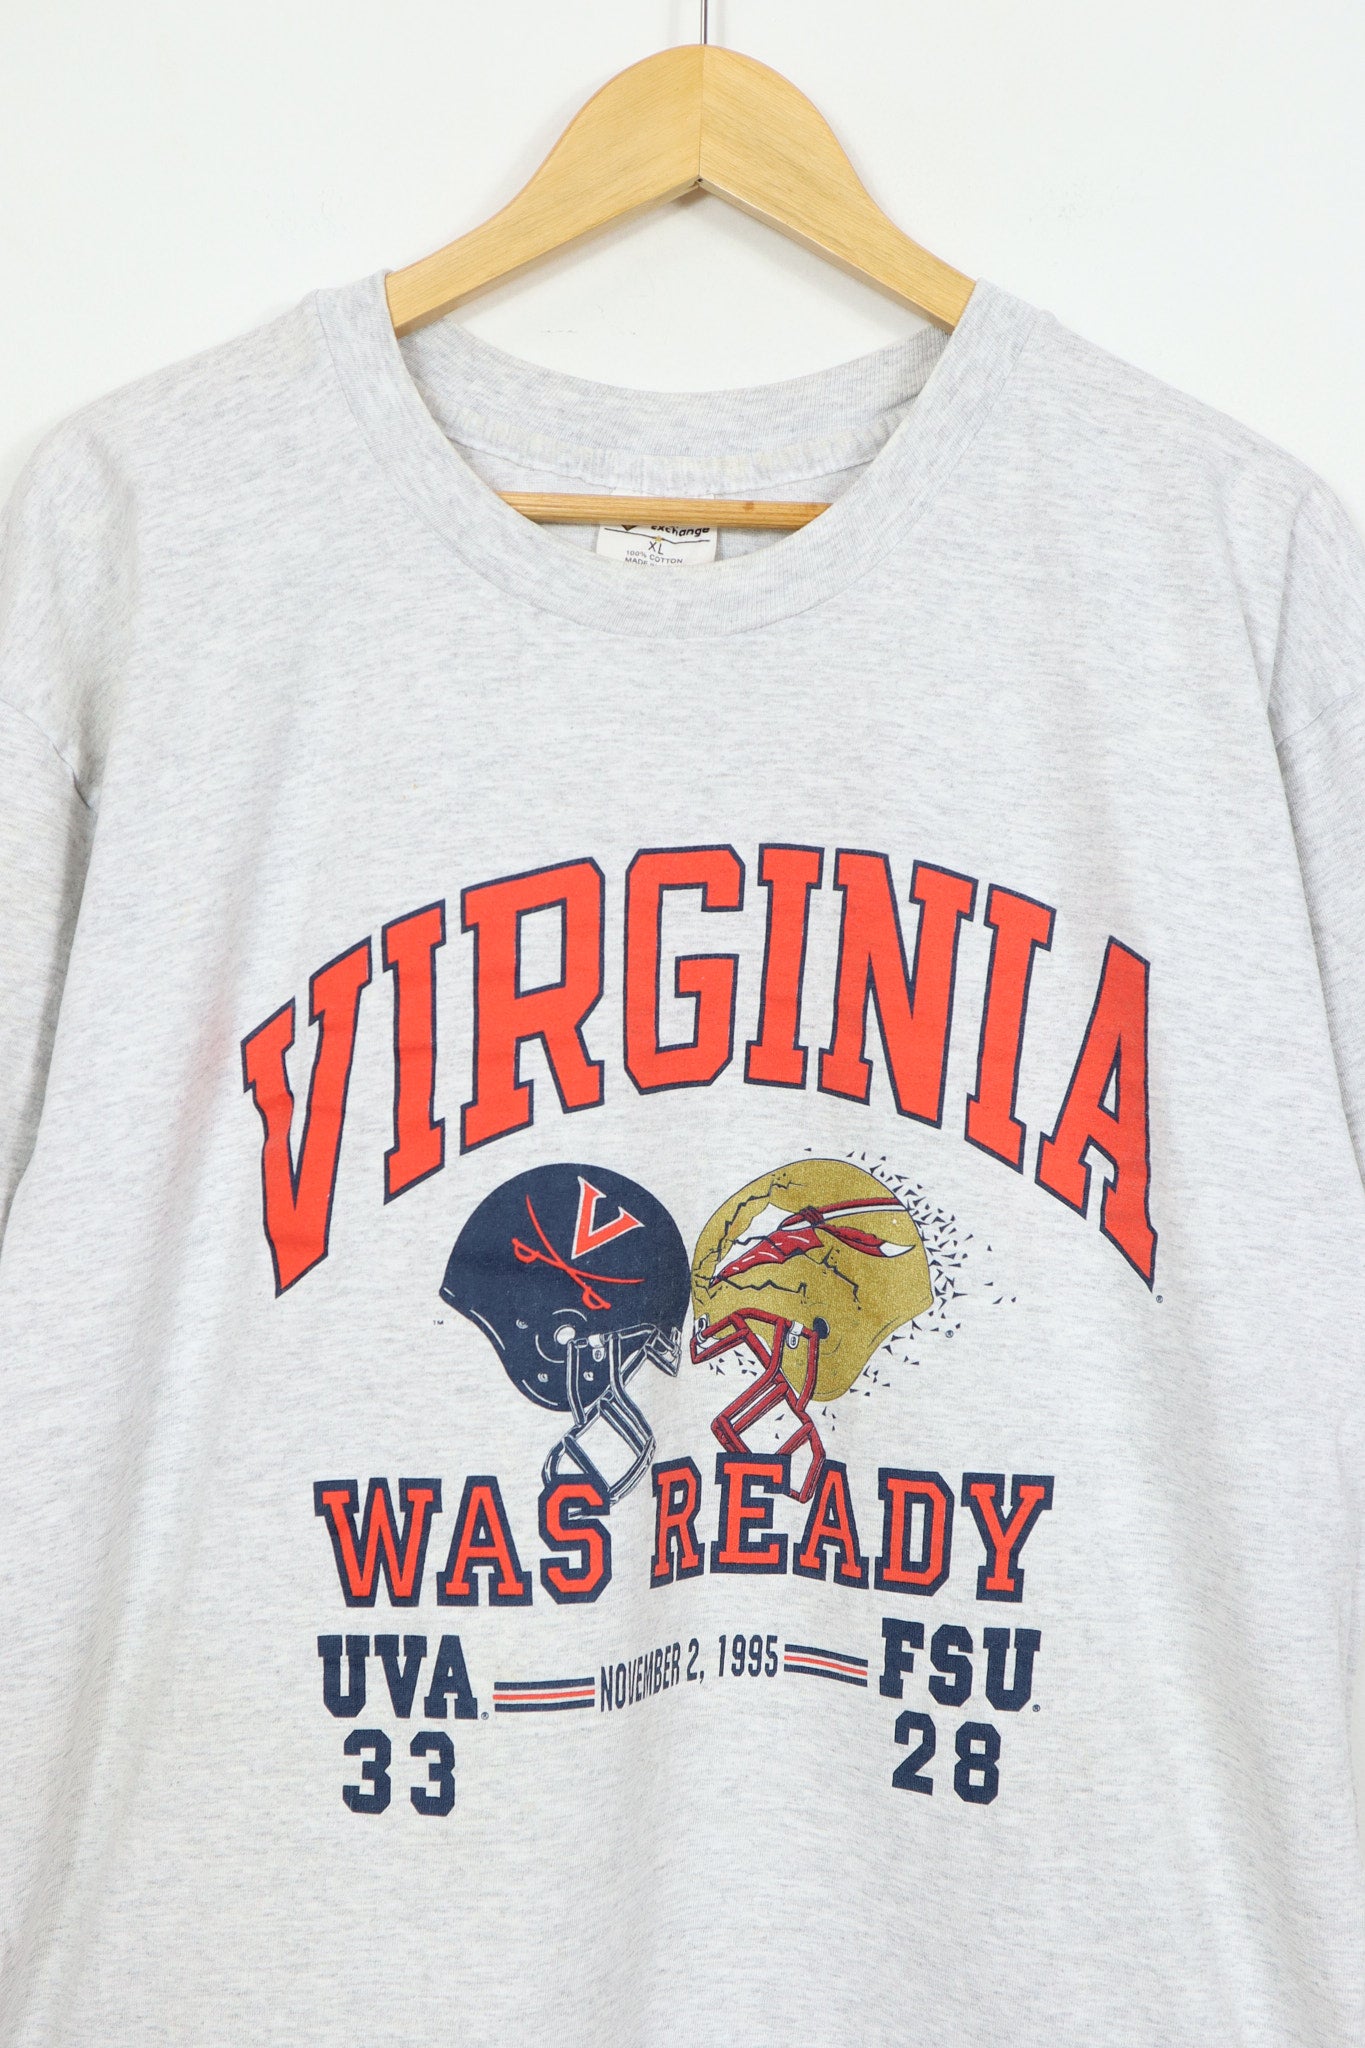 Vintage 1995 Virginia Football Tee